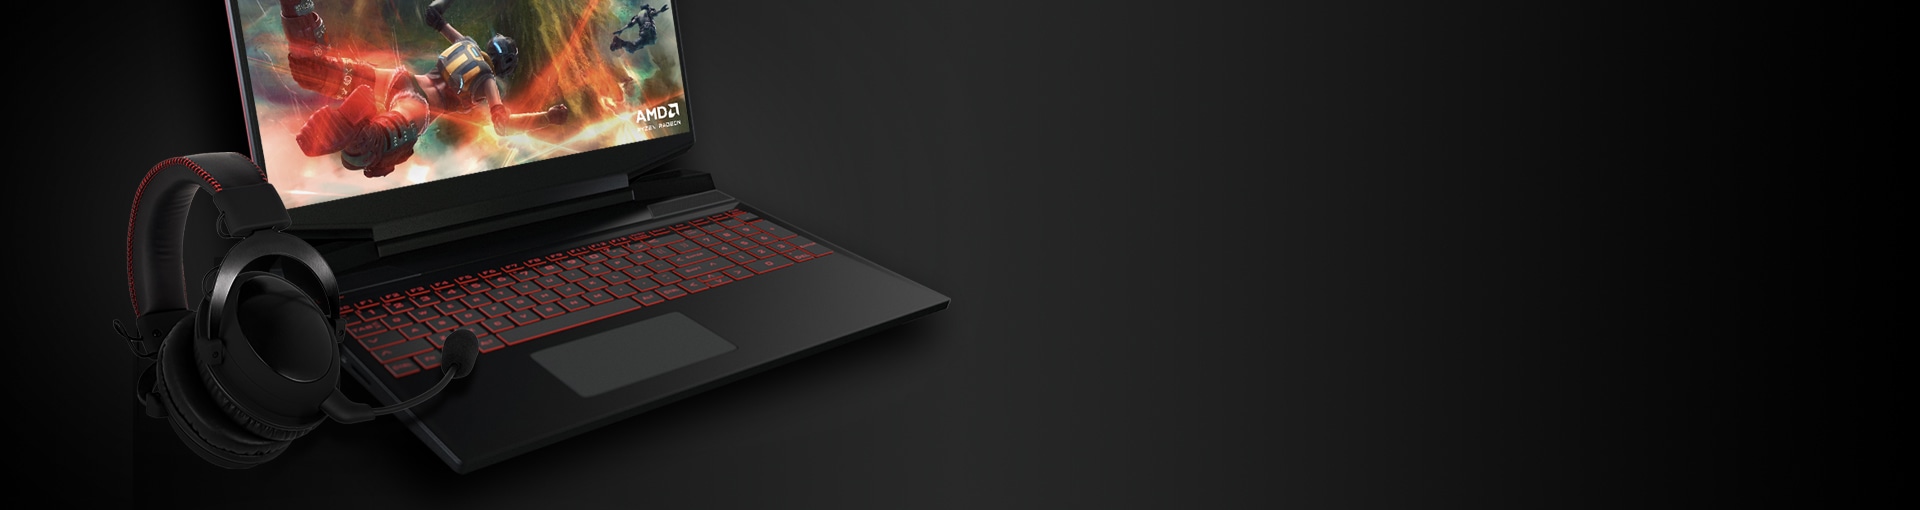 AMD Gaming Laptop